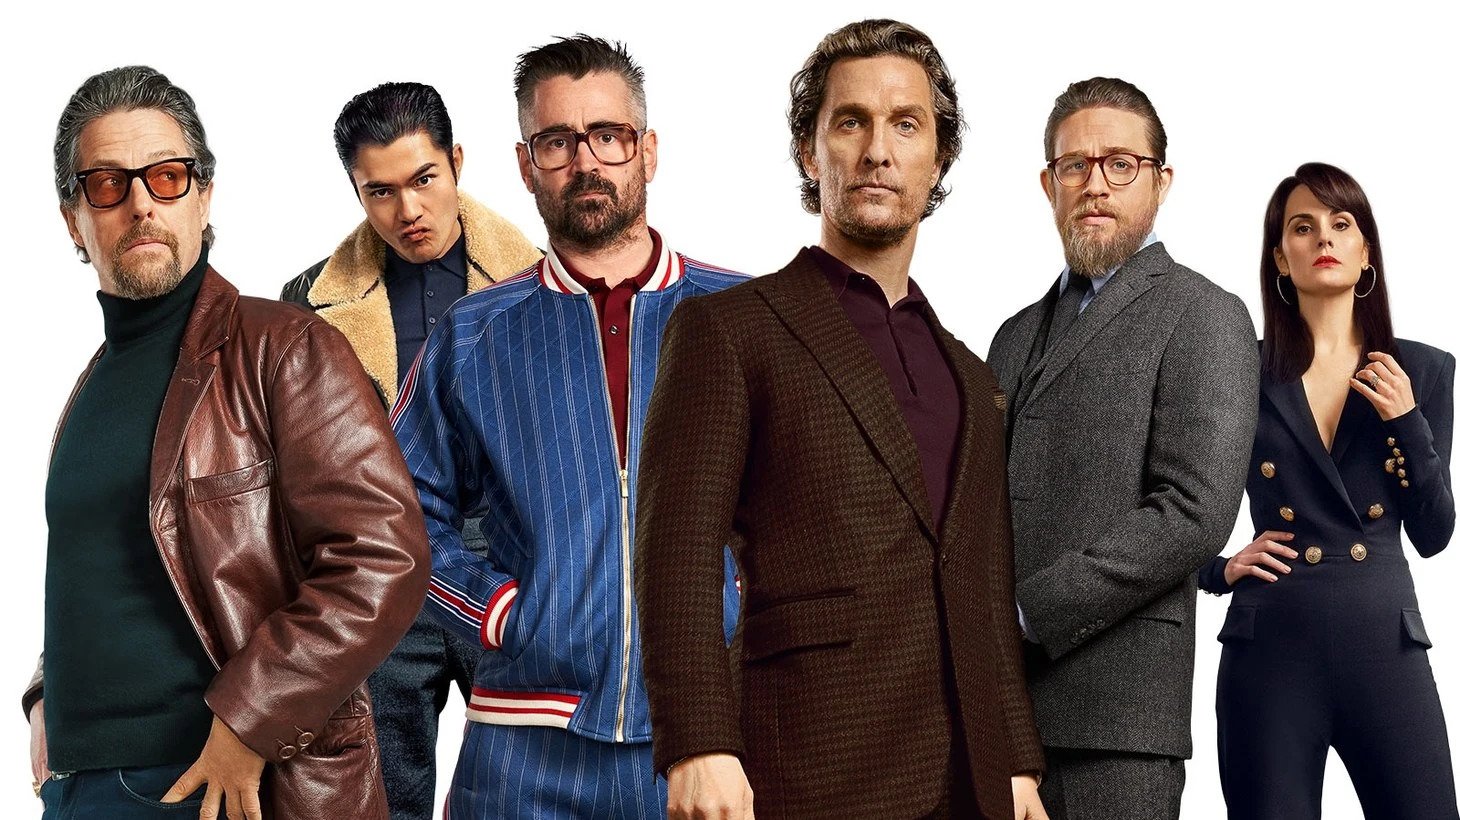 'The Gentlemen' Netflix Series Release Window, Trailer, Cast, Plot, and